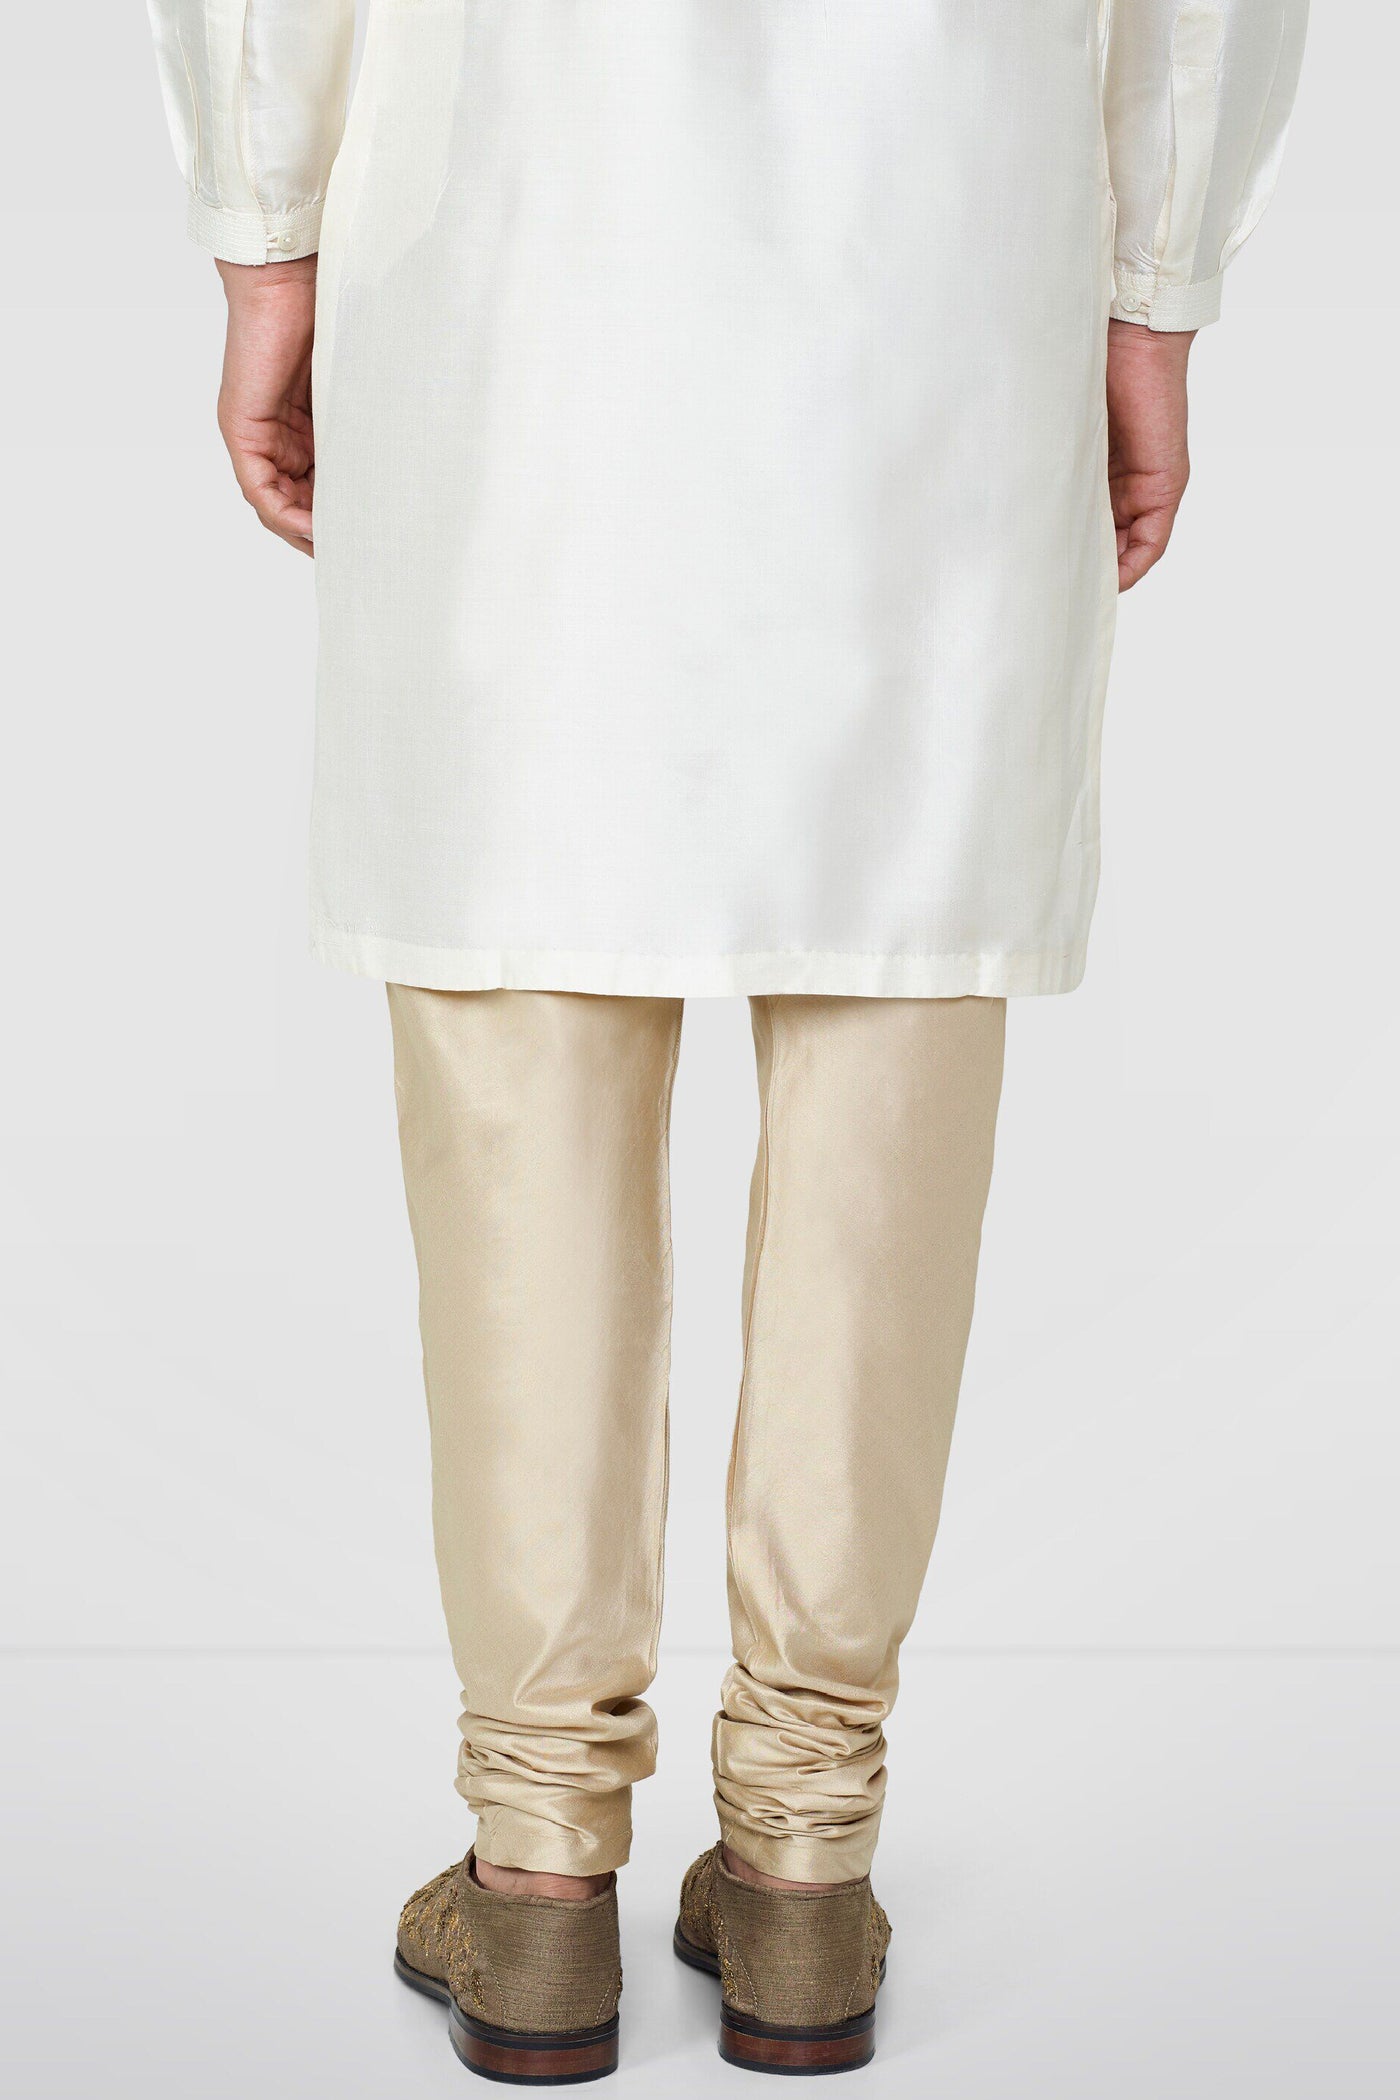 Anita Dongre Gold Silk Churidar Indian designer wear online shopping melange singapore